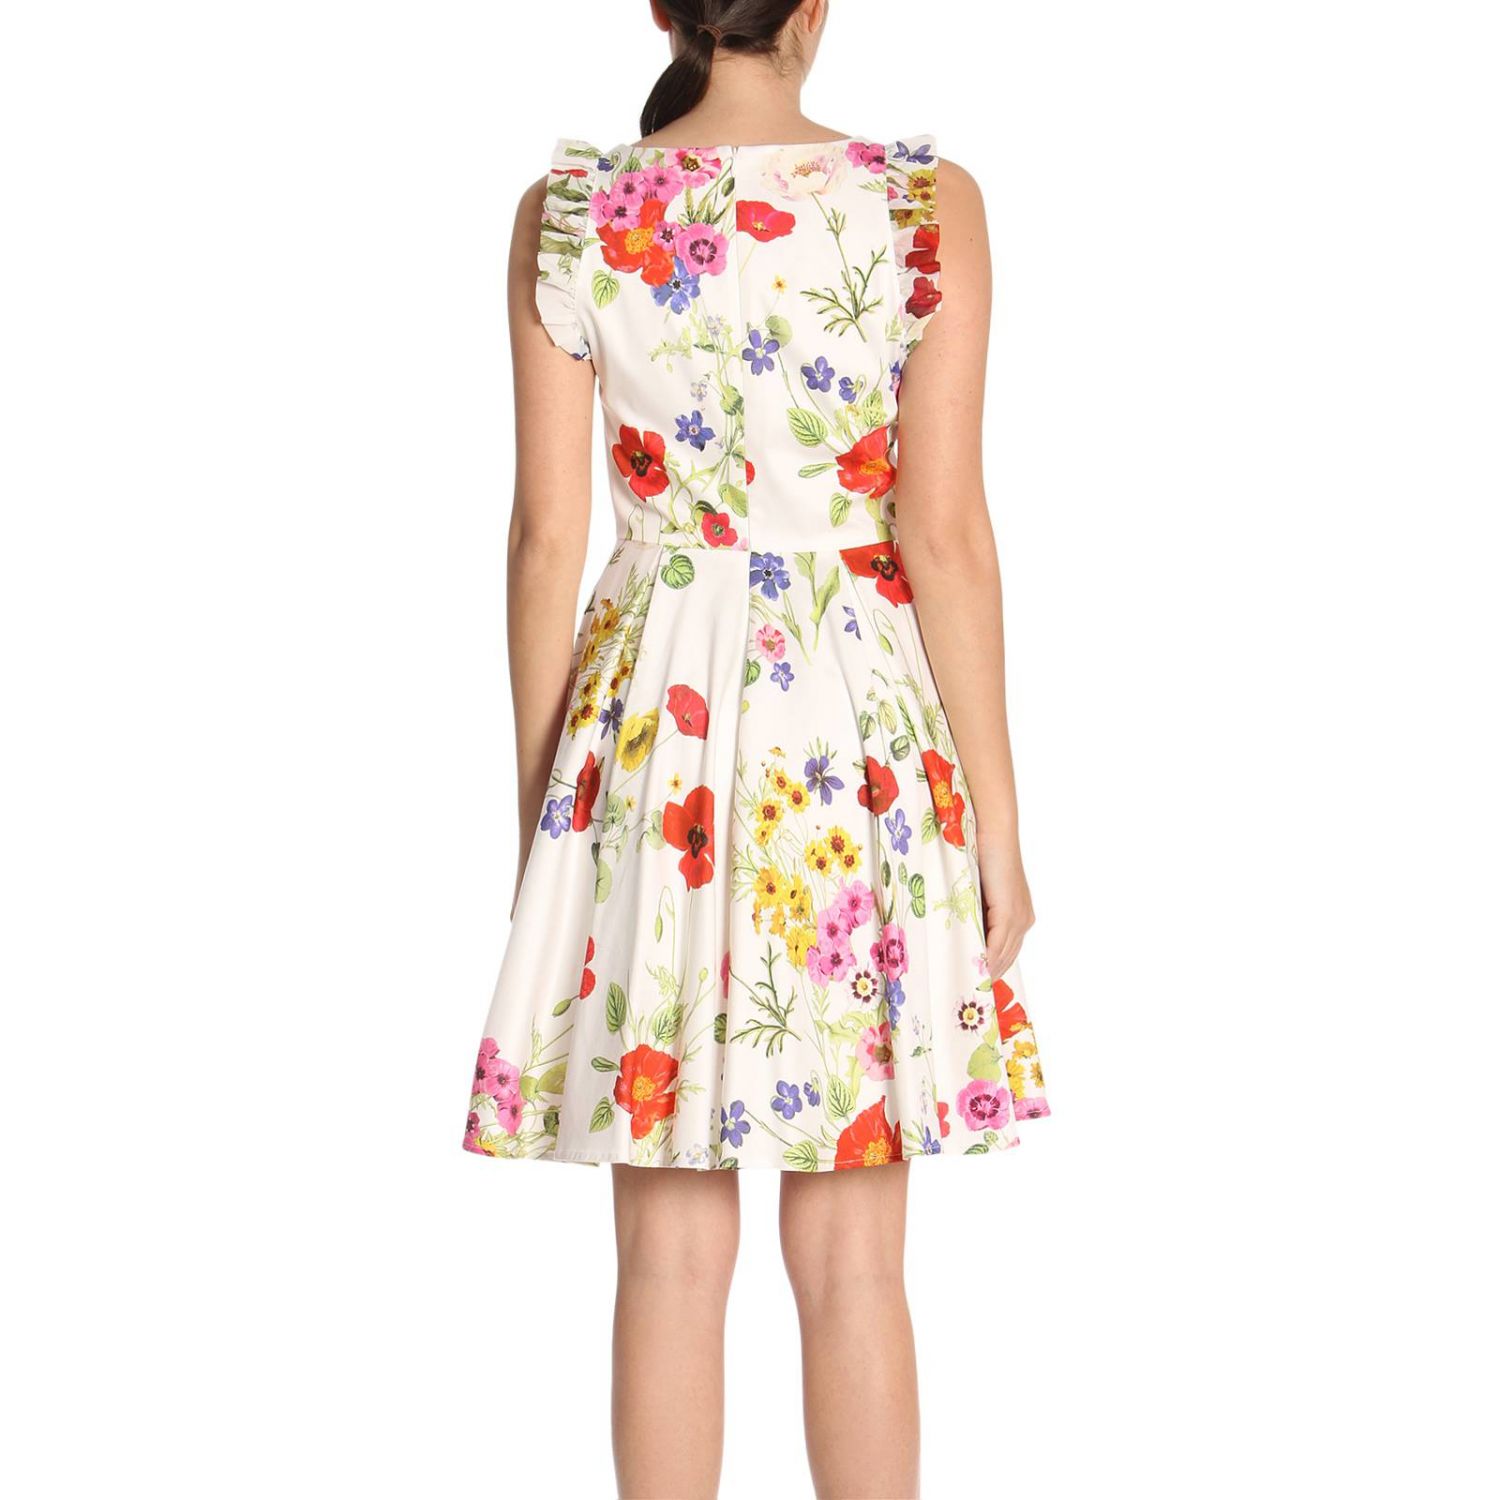 Blugirl Outlet: Dress women - Natural | Dress Blugirl 5425 GIGLIO.COM